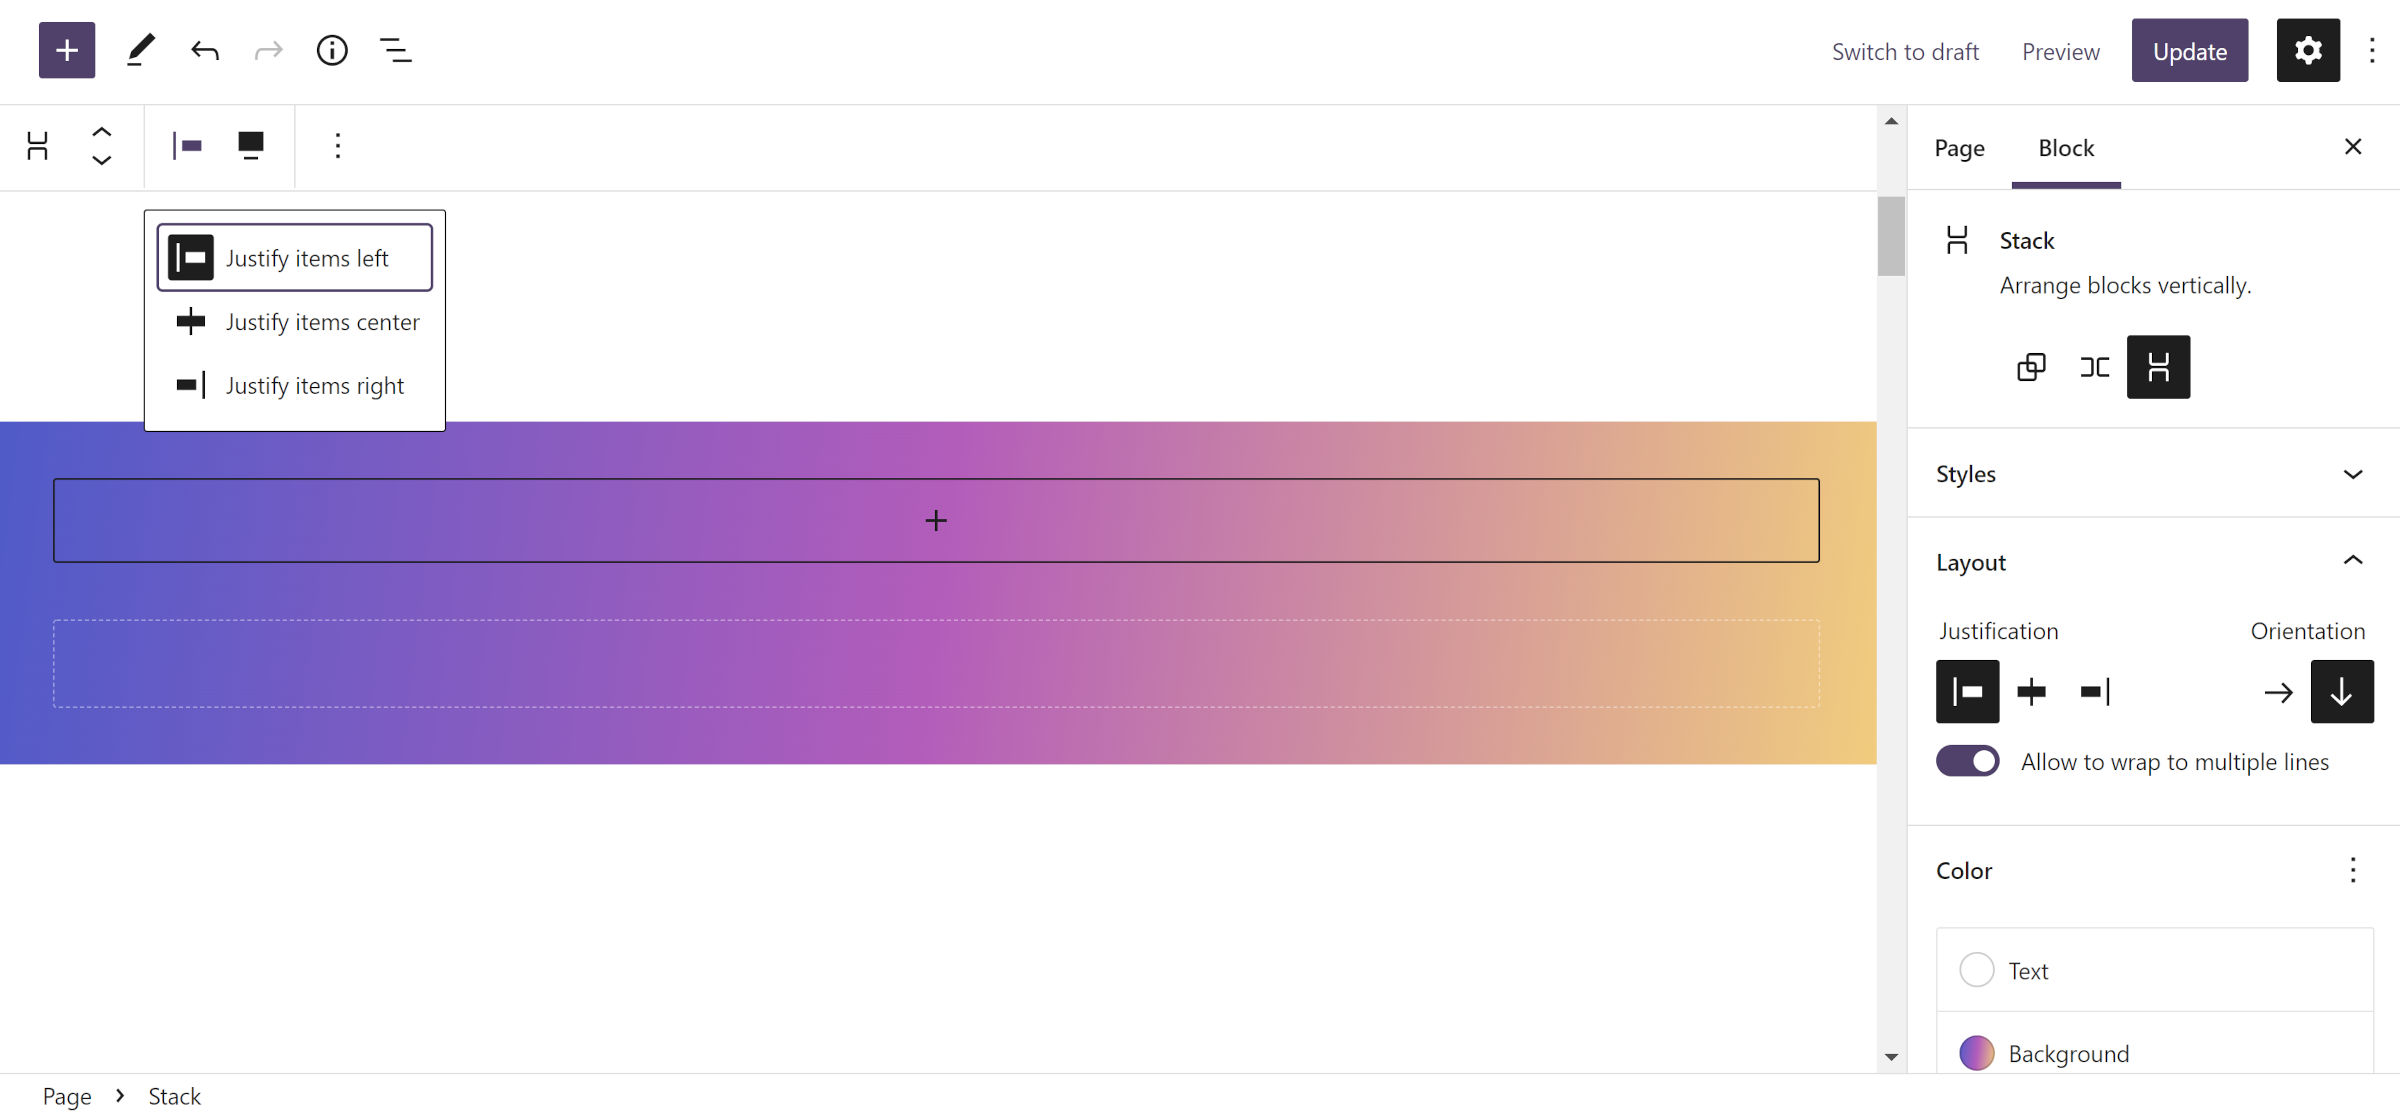 WordPress-Post-Editor mit eingefügtem Stack-Block, der einen bunten Farbverlaufshintergrund hat.  Das Symbolleistensteuerelement für die Inhaltsausrichtung wird mit den Elementen links ausgewählt.